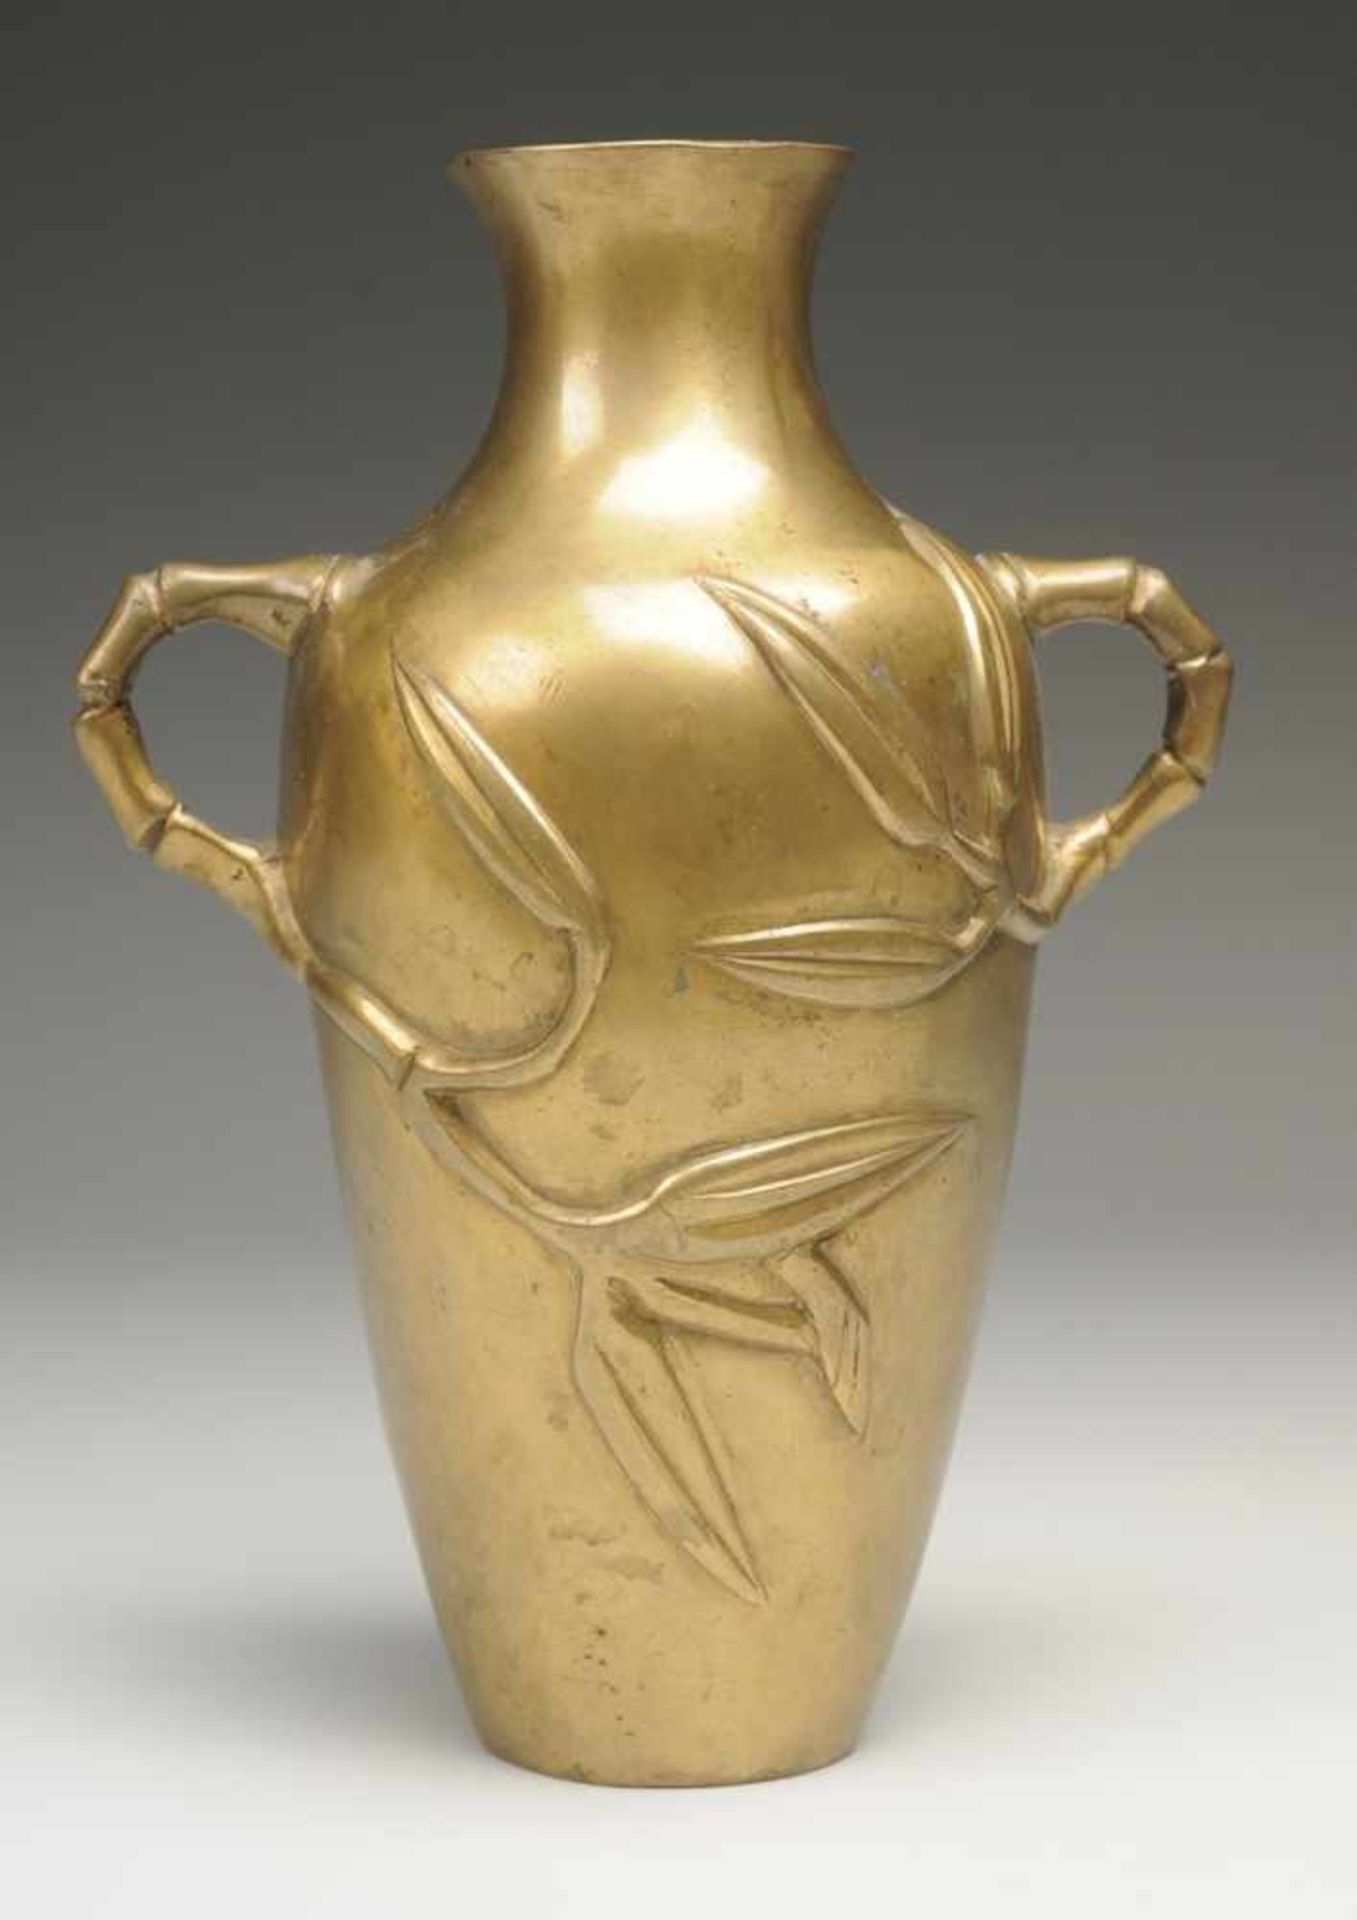 Vase Messing. Ovoider Korpus mit leicht ausgezogener Mündung u. Handhaben in Form von